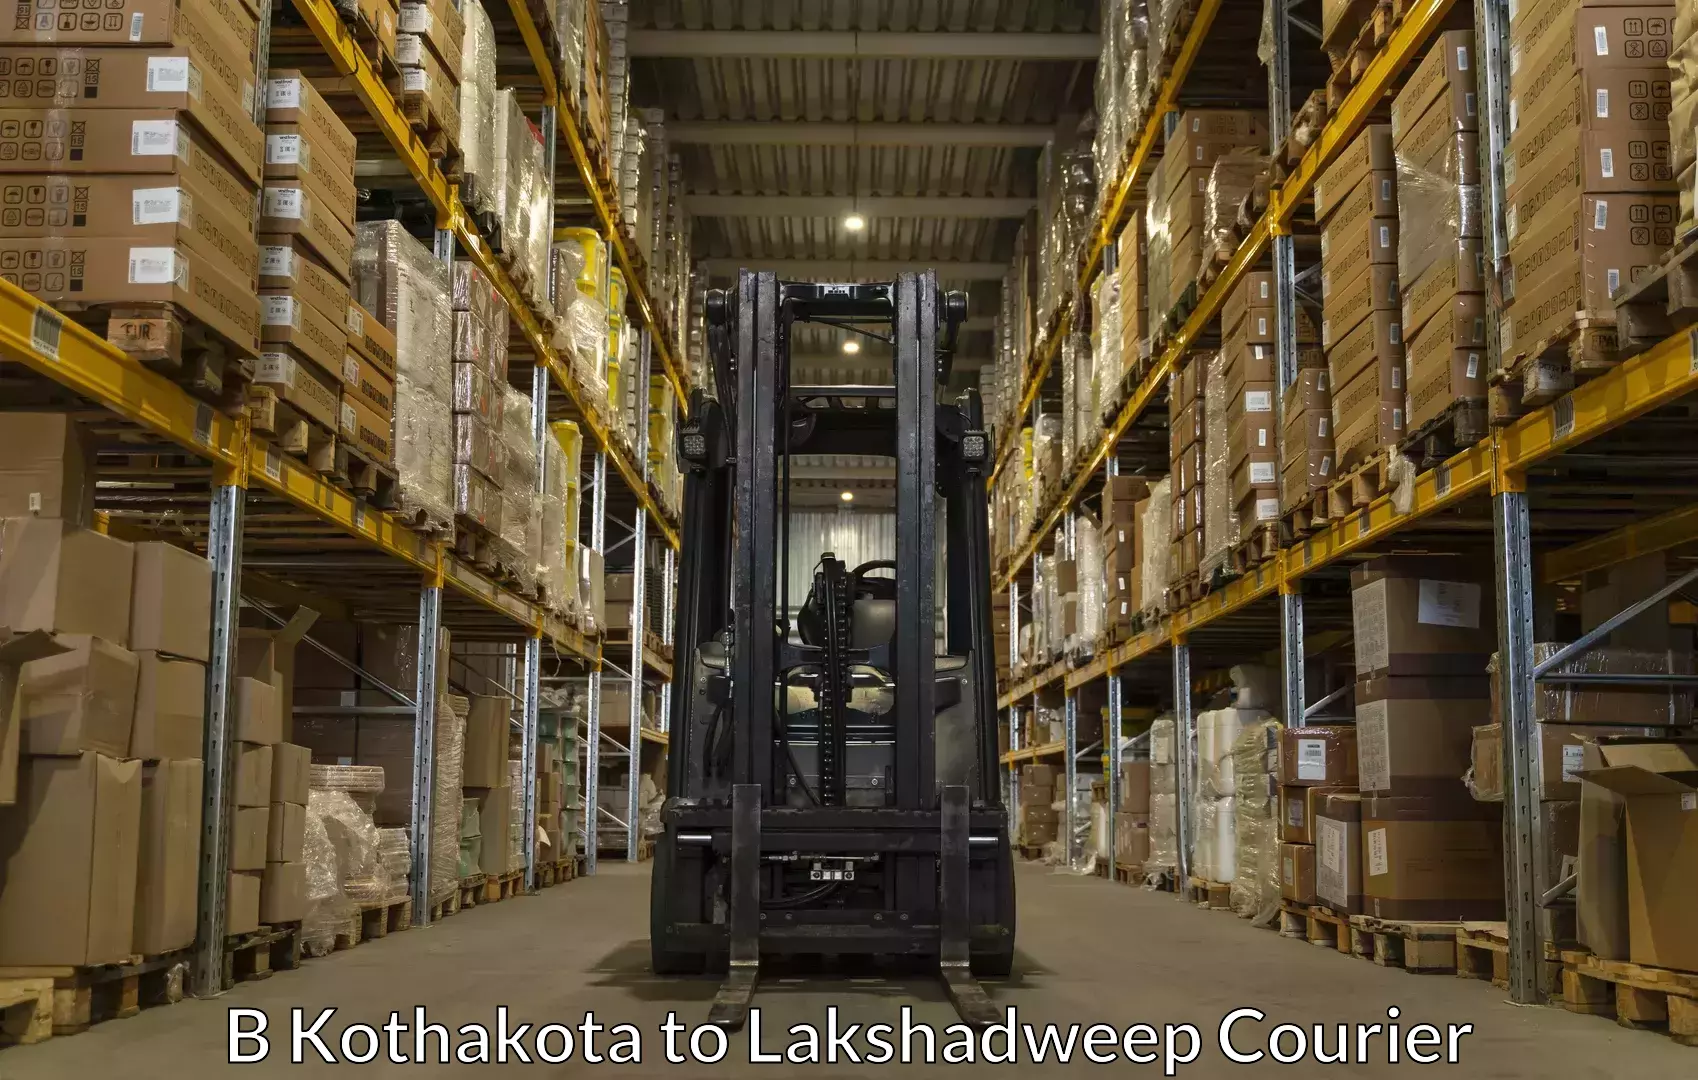 Specialized moving company B Kothakota to Lakshadweep